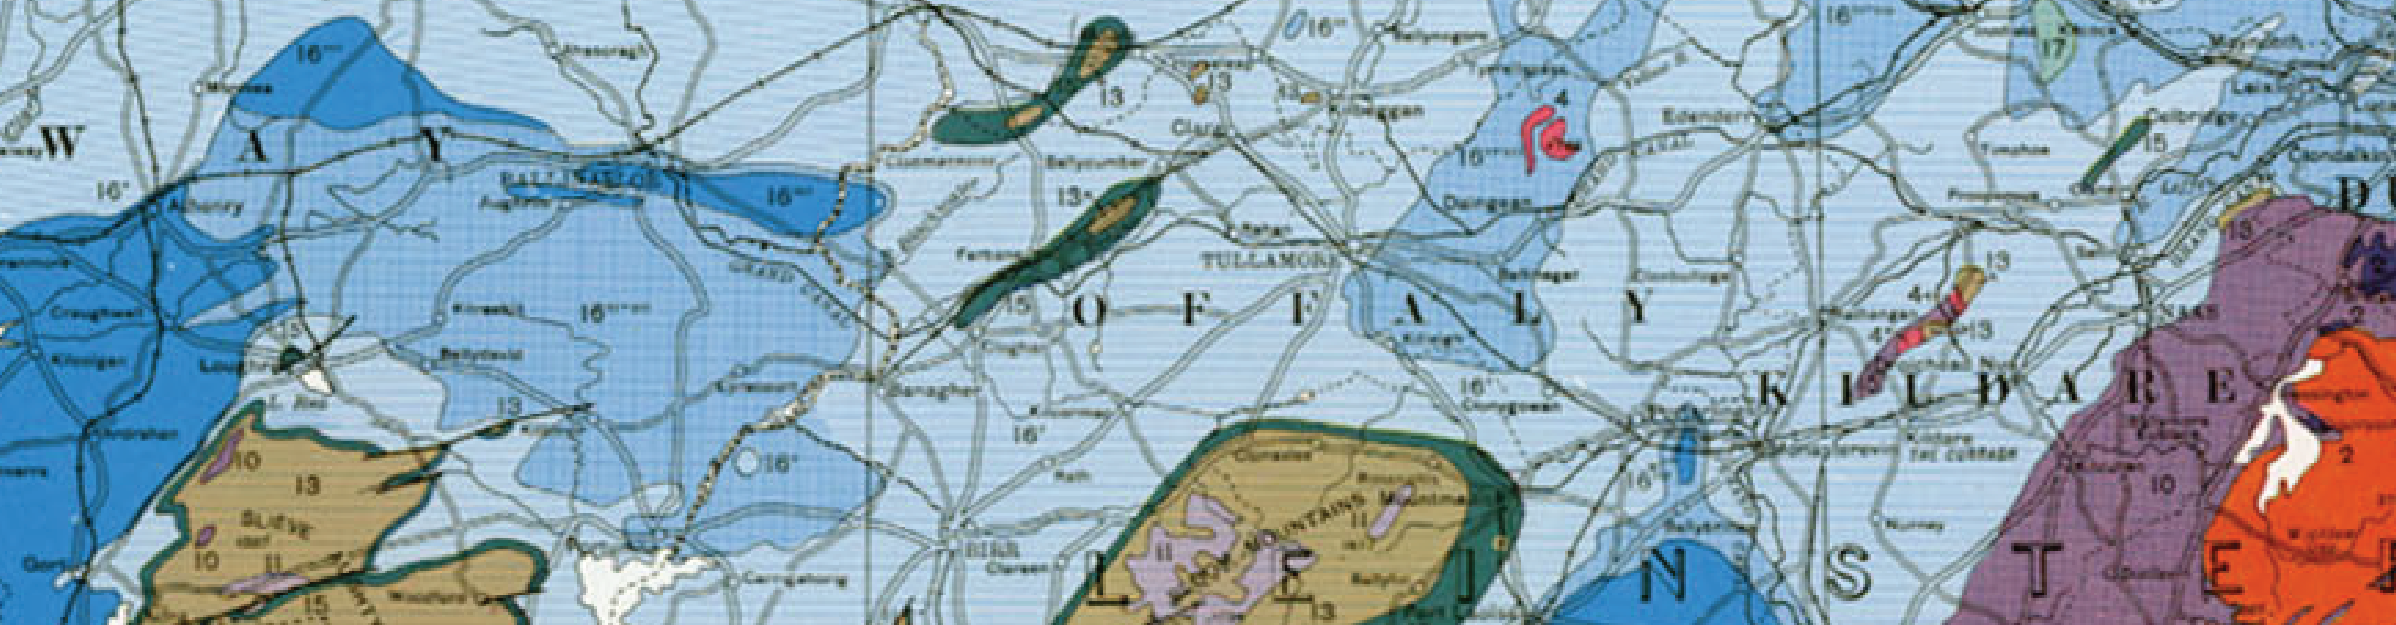 Map image courtesy of the Geological Survey of Ireland.